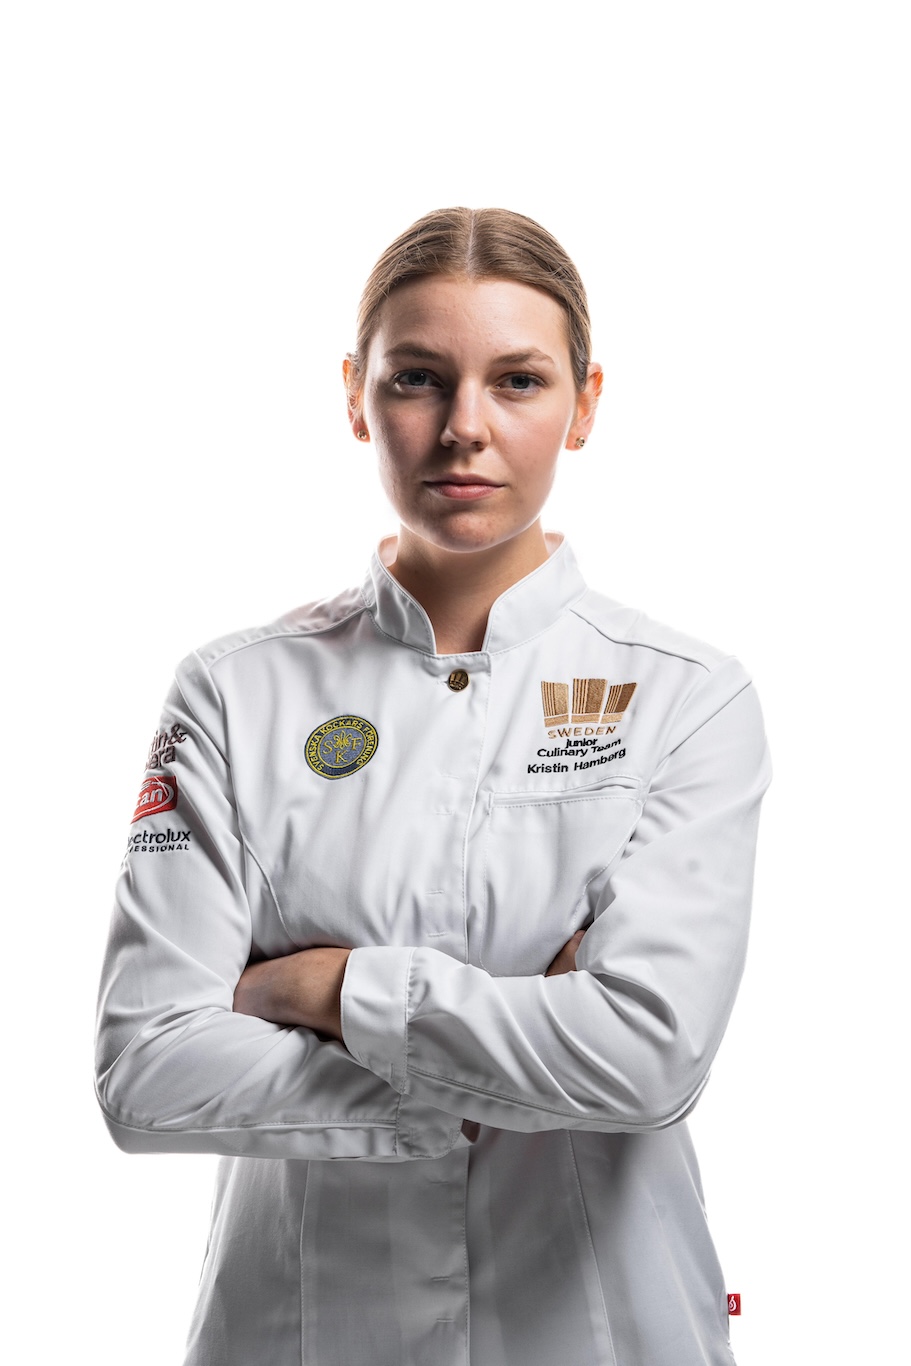 Kristin Hambergs reise fra amatørbaker til kulinarisk OL-gullvinner 9